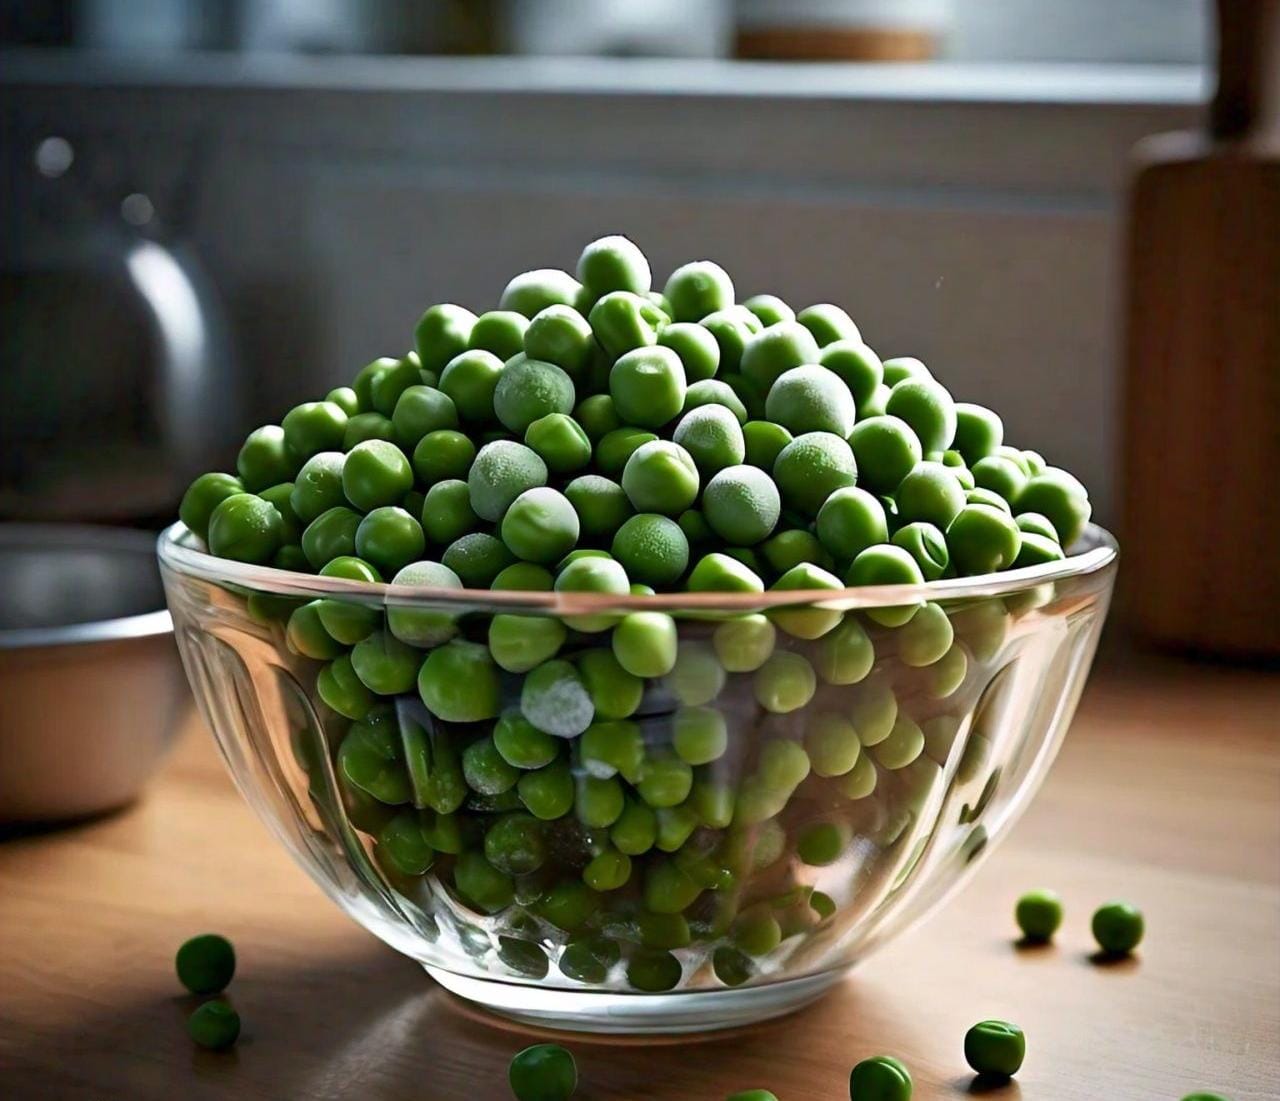 Frozen Peas Side Effects: फ्रोजन मटर के सेवन से हो सकता है नुकसान, जानिए